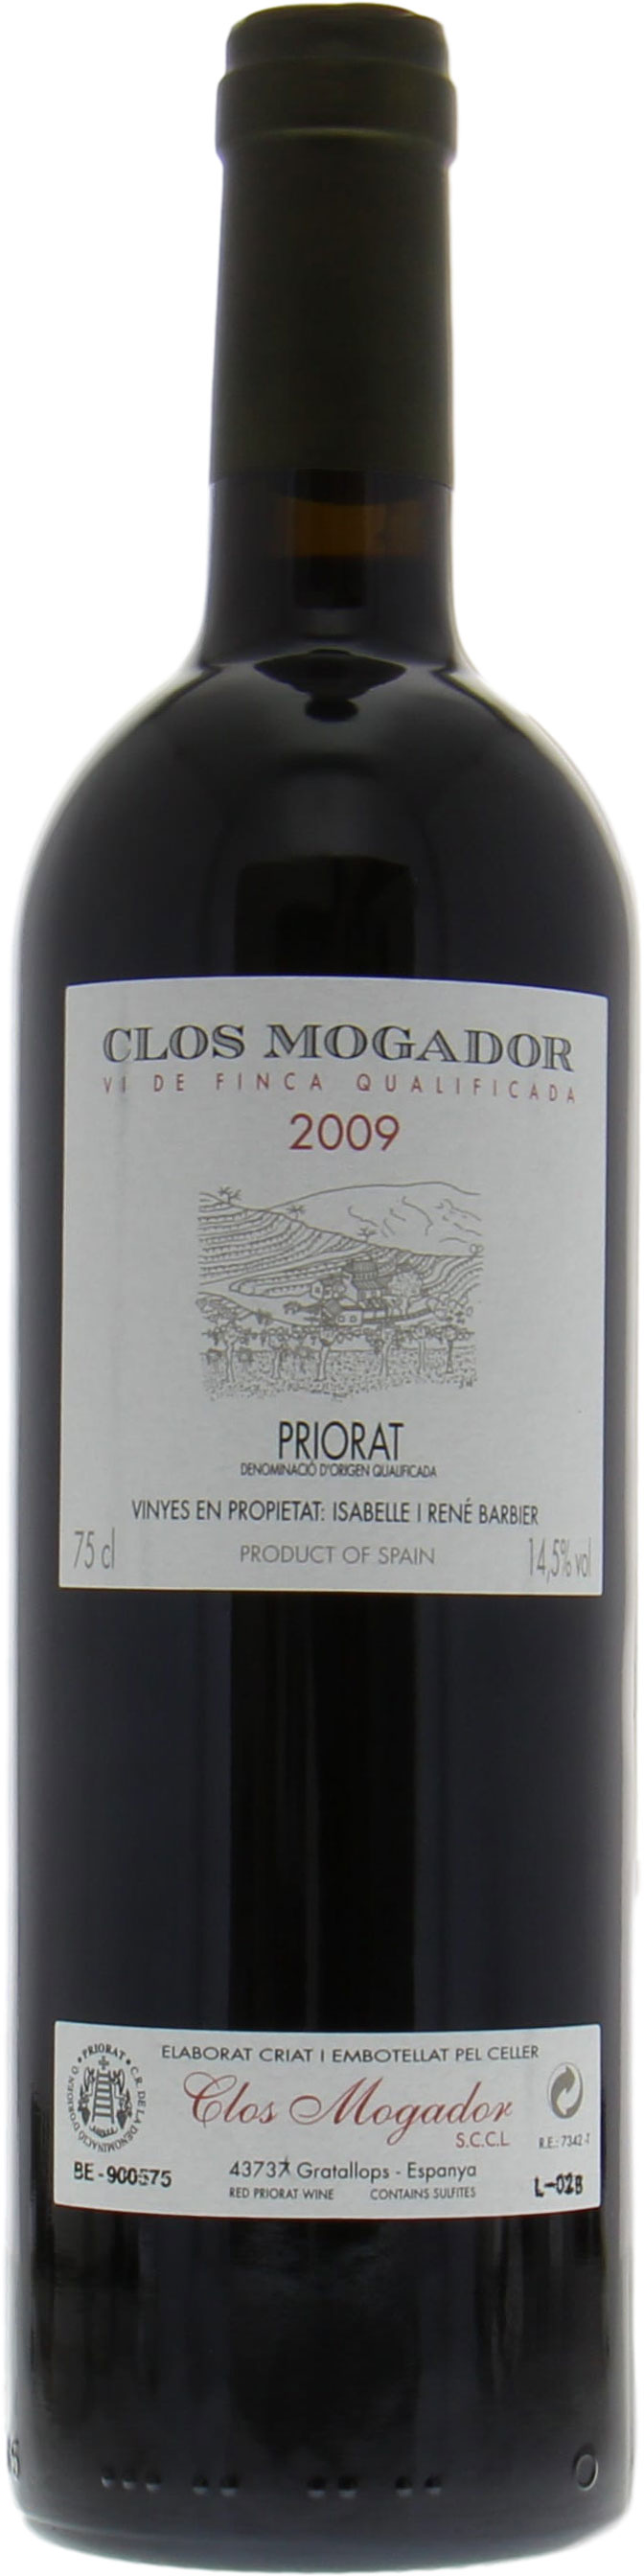 Clos Mogador - Priorat 2009 Perfect